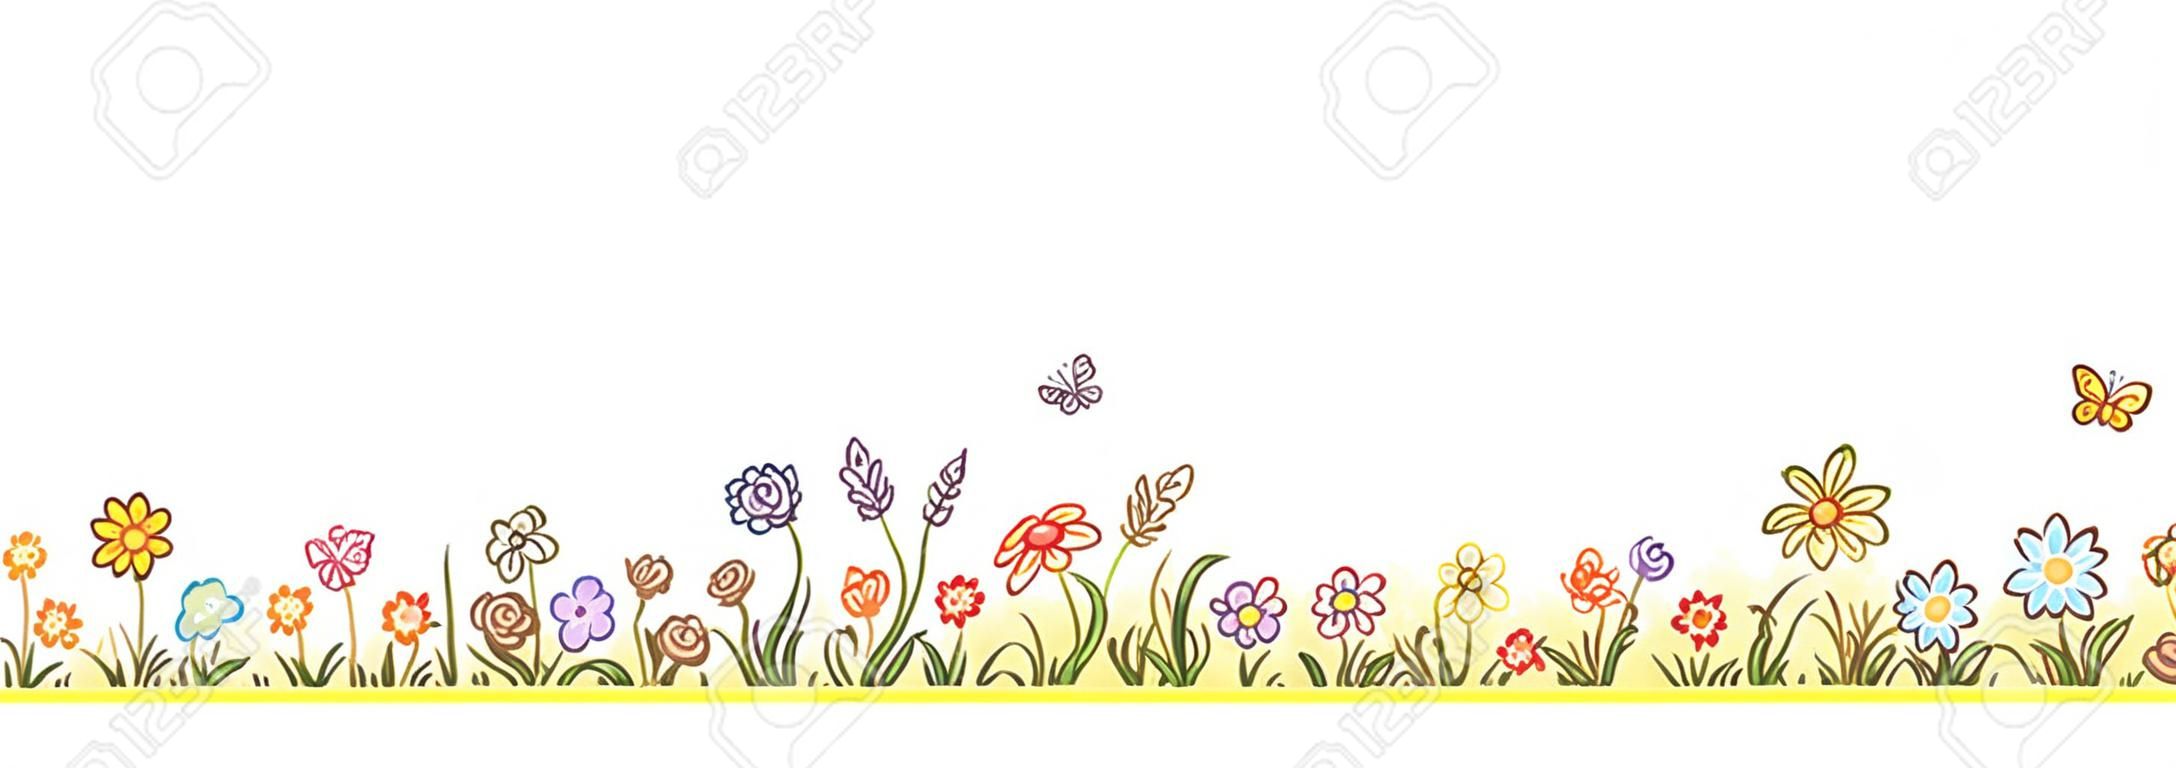 Bunte Blume Grenze mit vielen Cartoon Blumen, Gras und Schmetterlinge, keine Steigungen